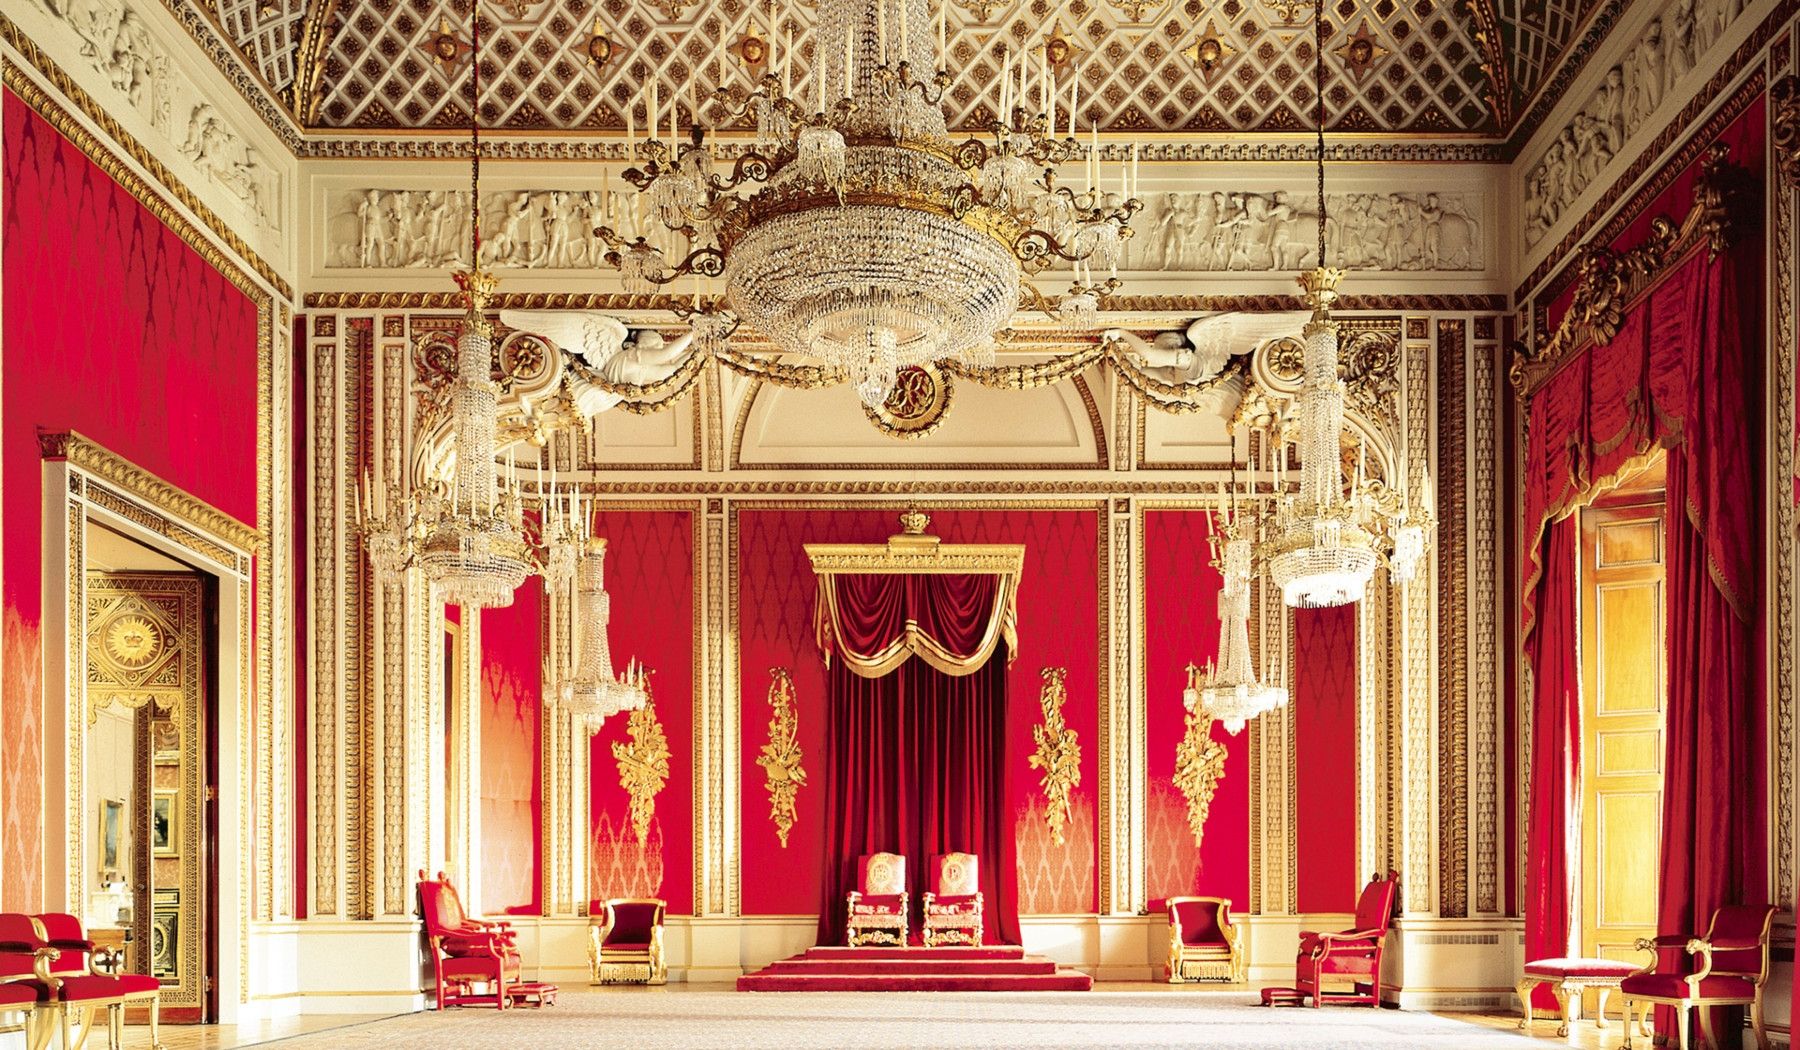 Hình ảnh phòng nghi lễ trong cung điện Buckingham